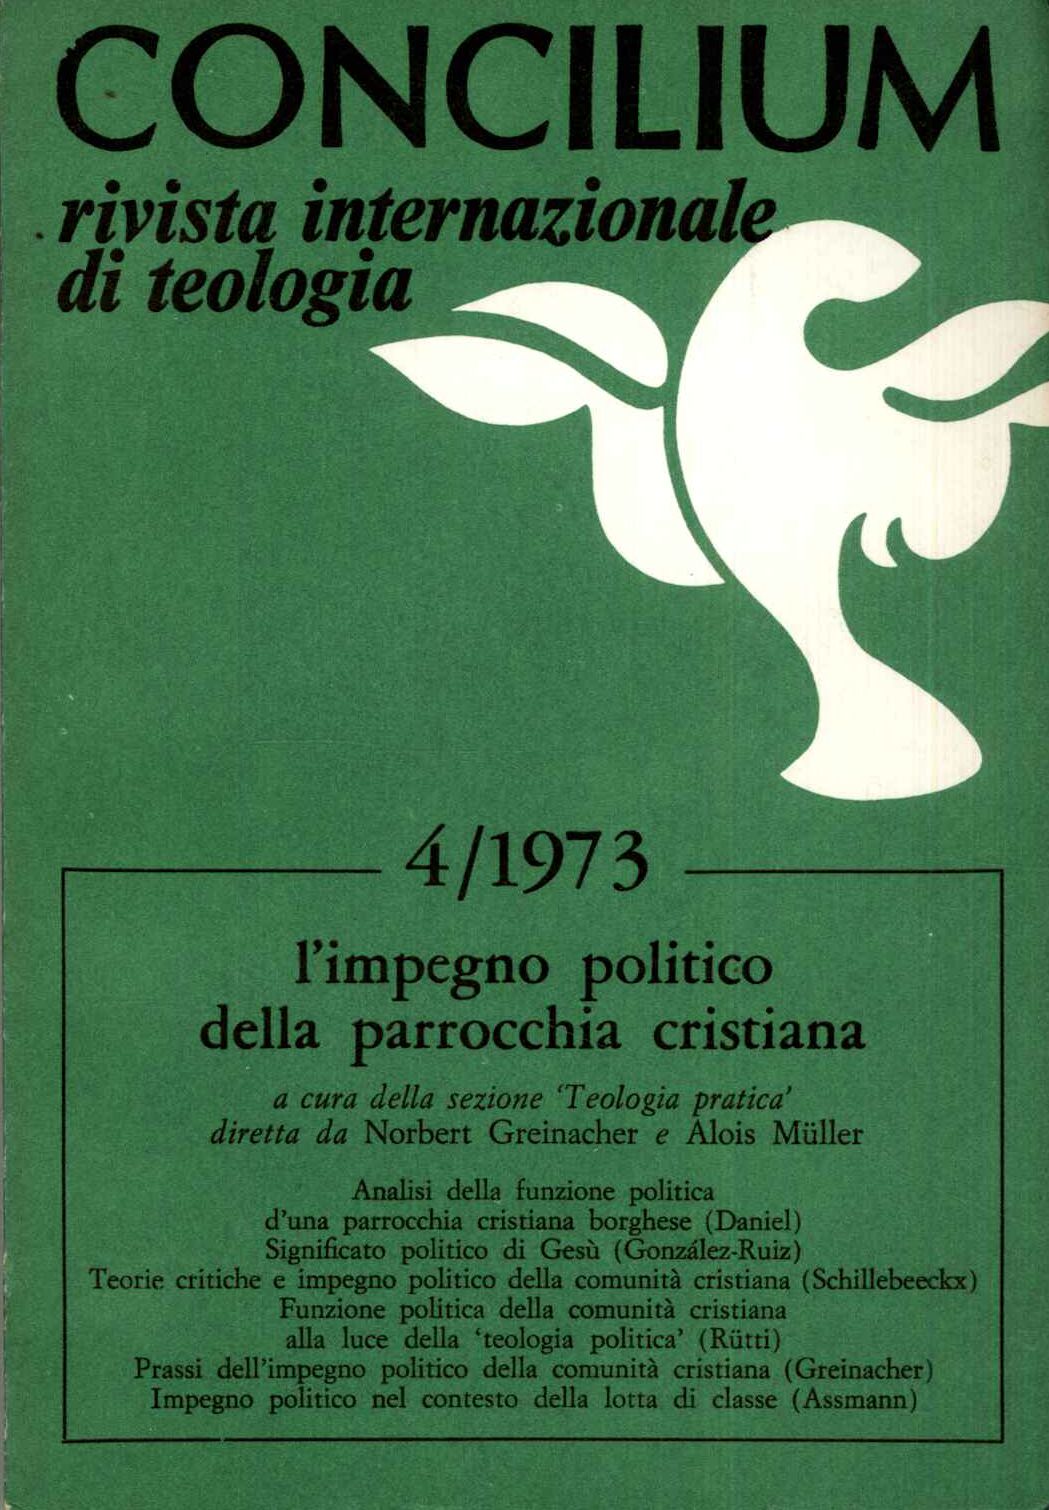 Concilium 4/1973